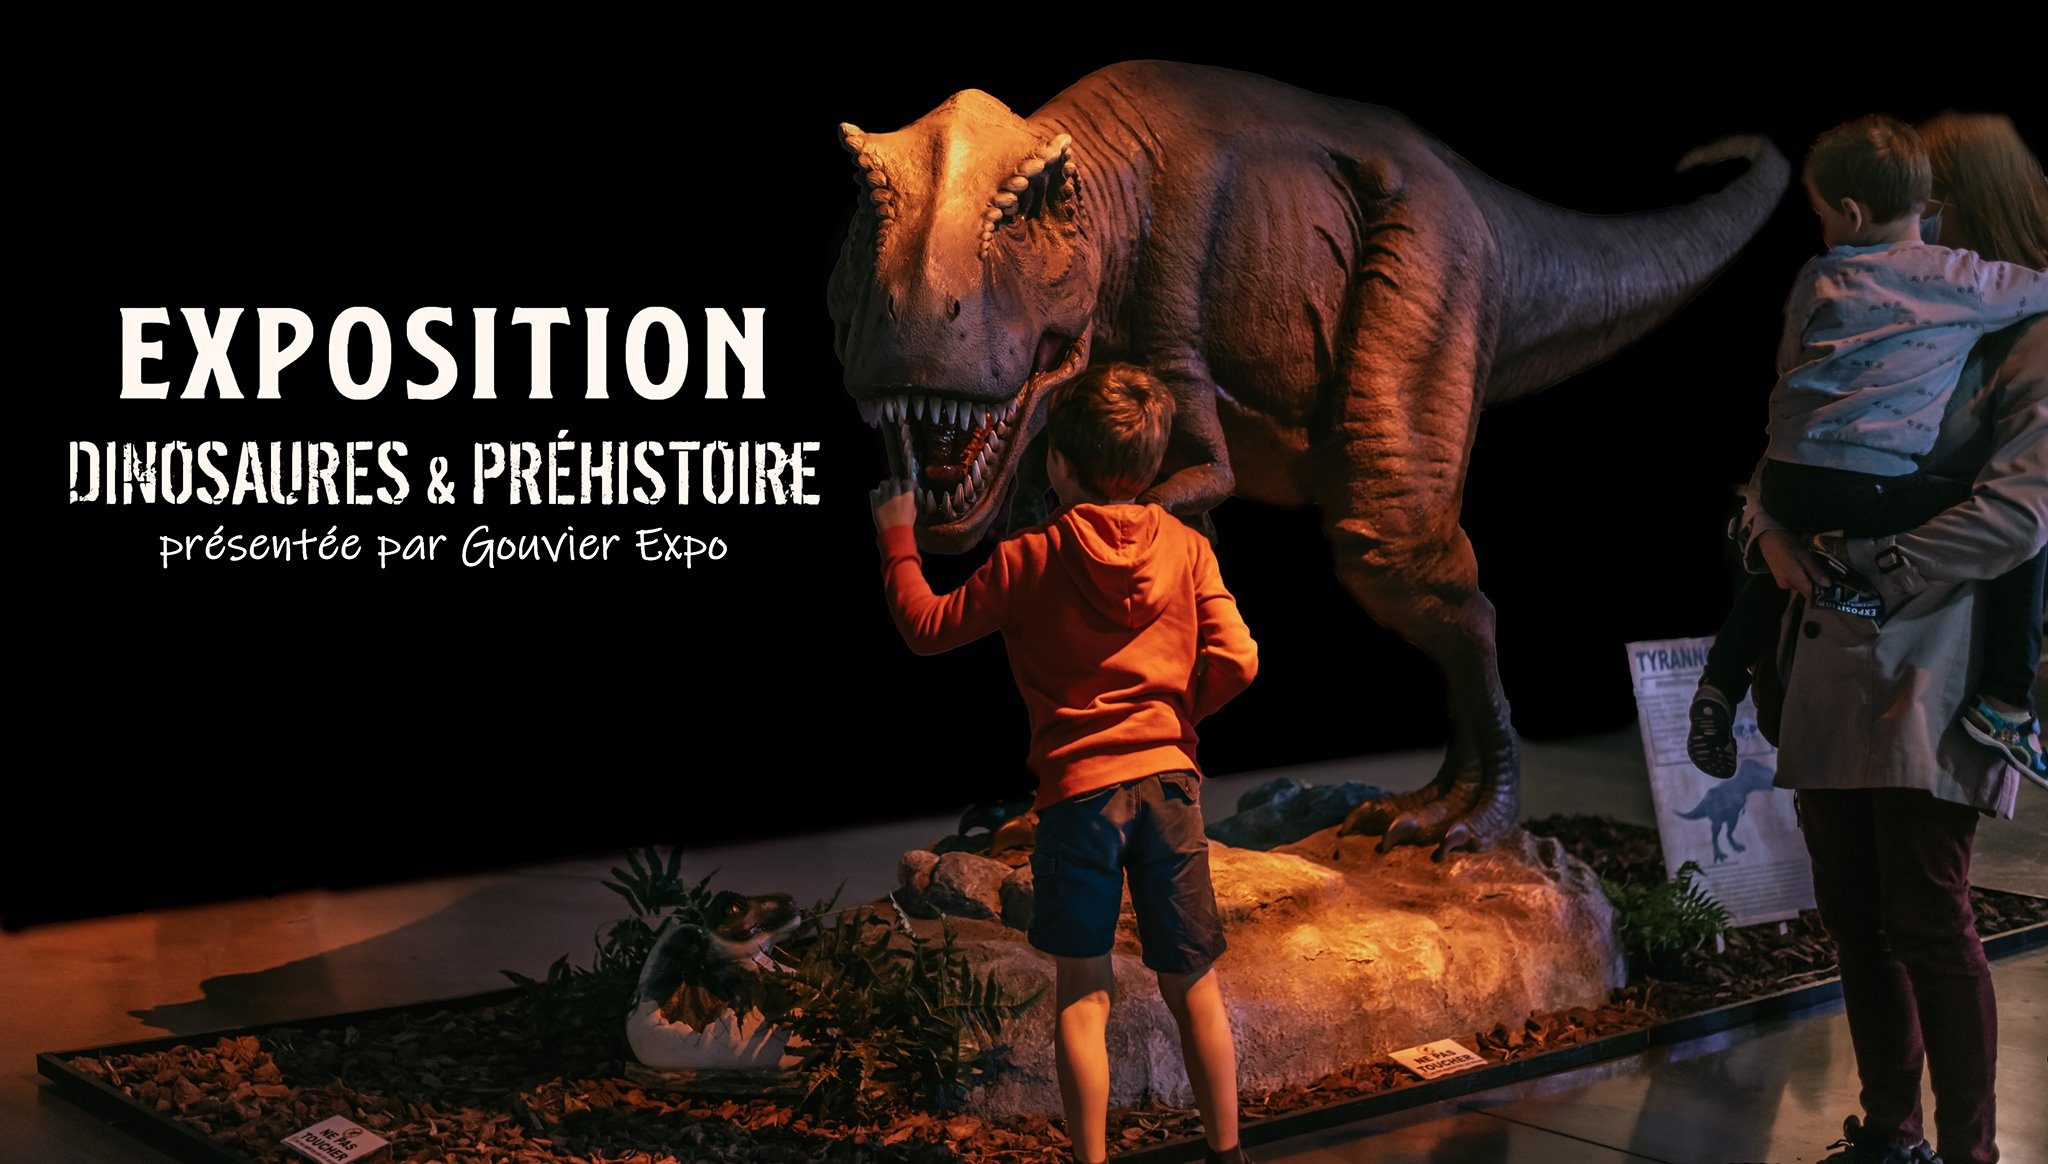 dinosaures, fossiles et préhistoire à nort sur erdre présentés par gouvier expo 7 ecposition dinosaure nor sur erdre